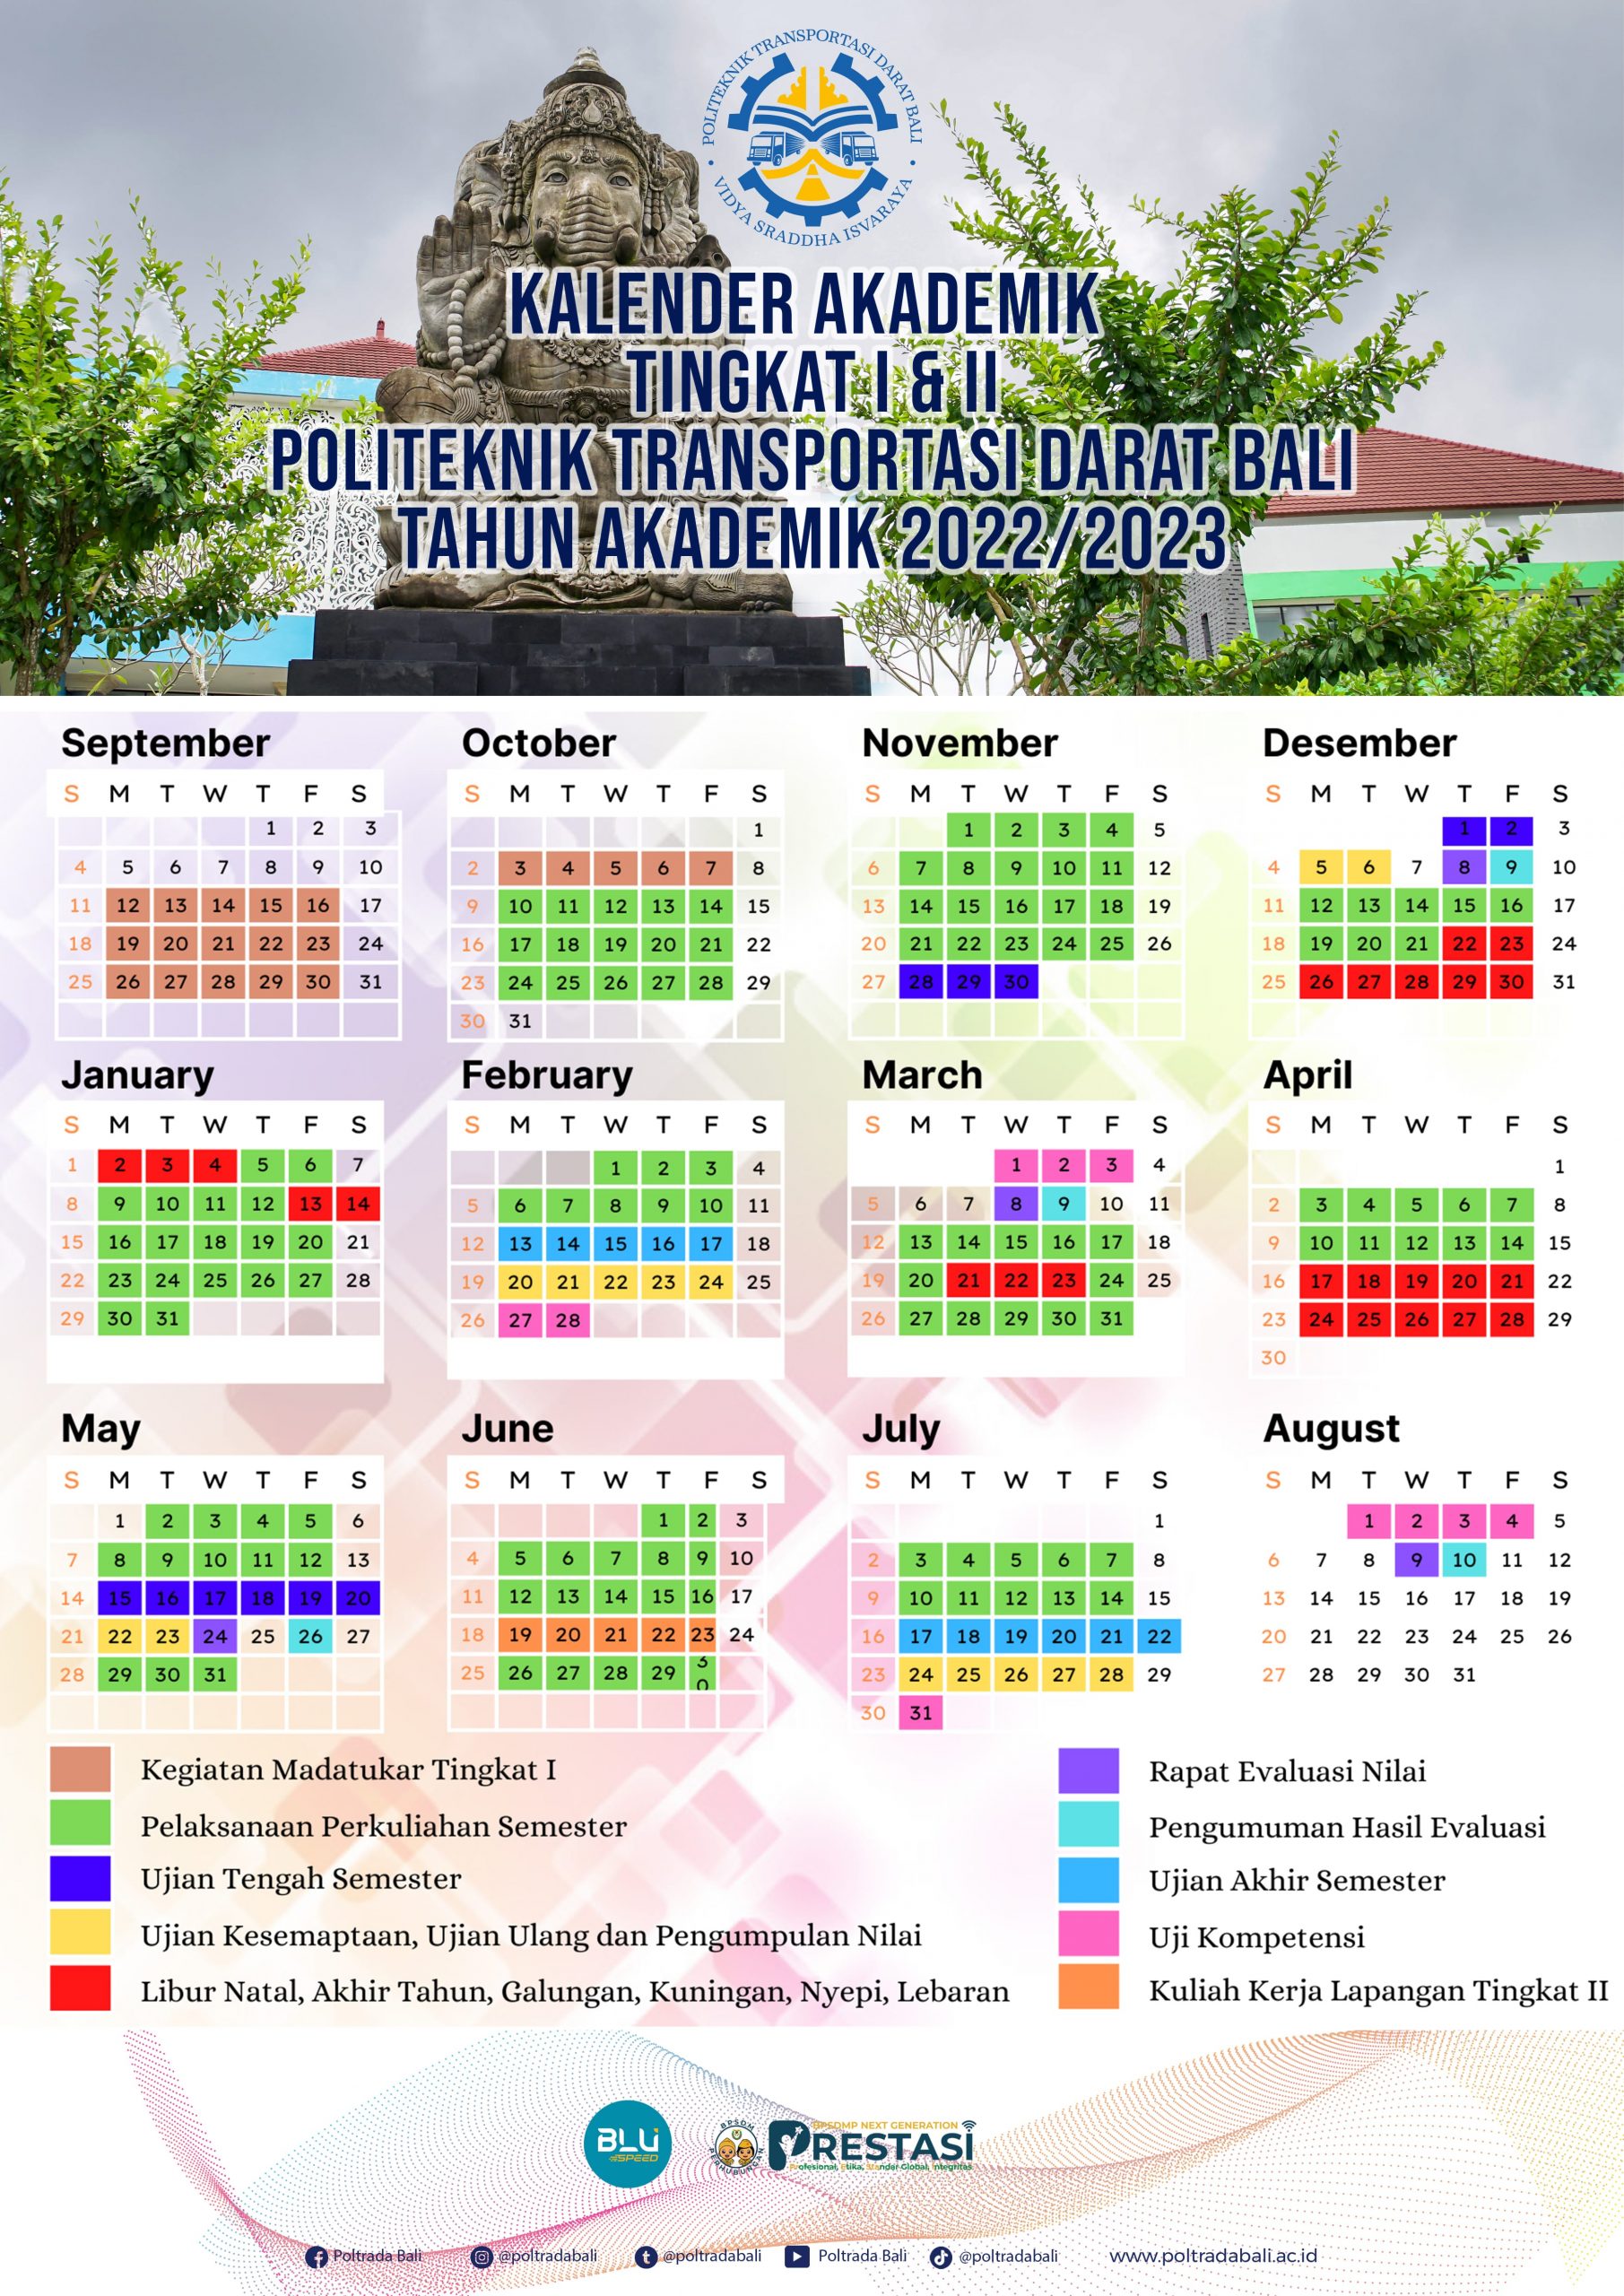 Kalender Akademik Politeknik Transportasi Darat Bali Tahun Akademik